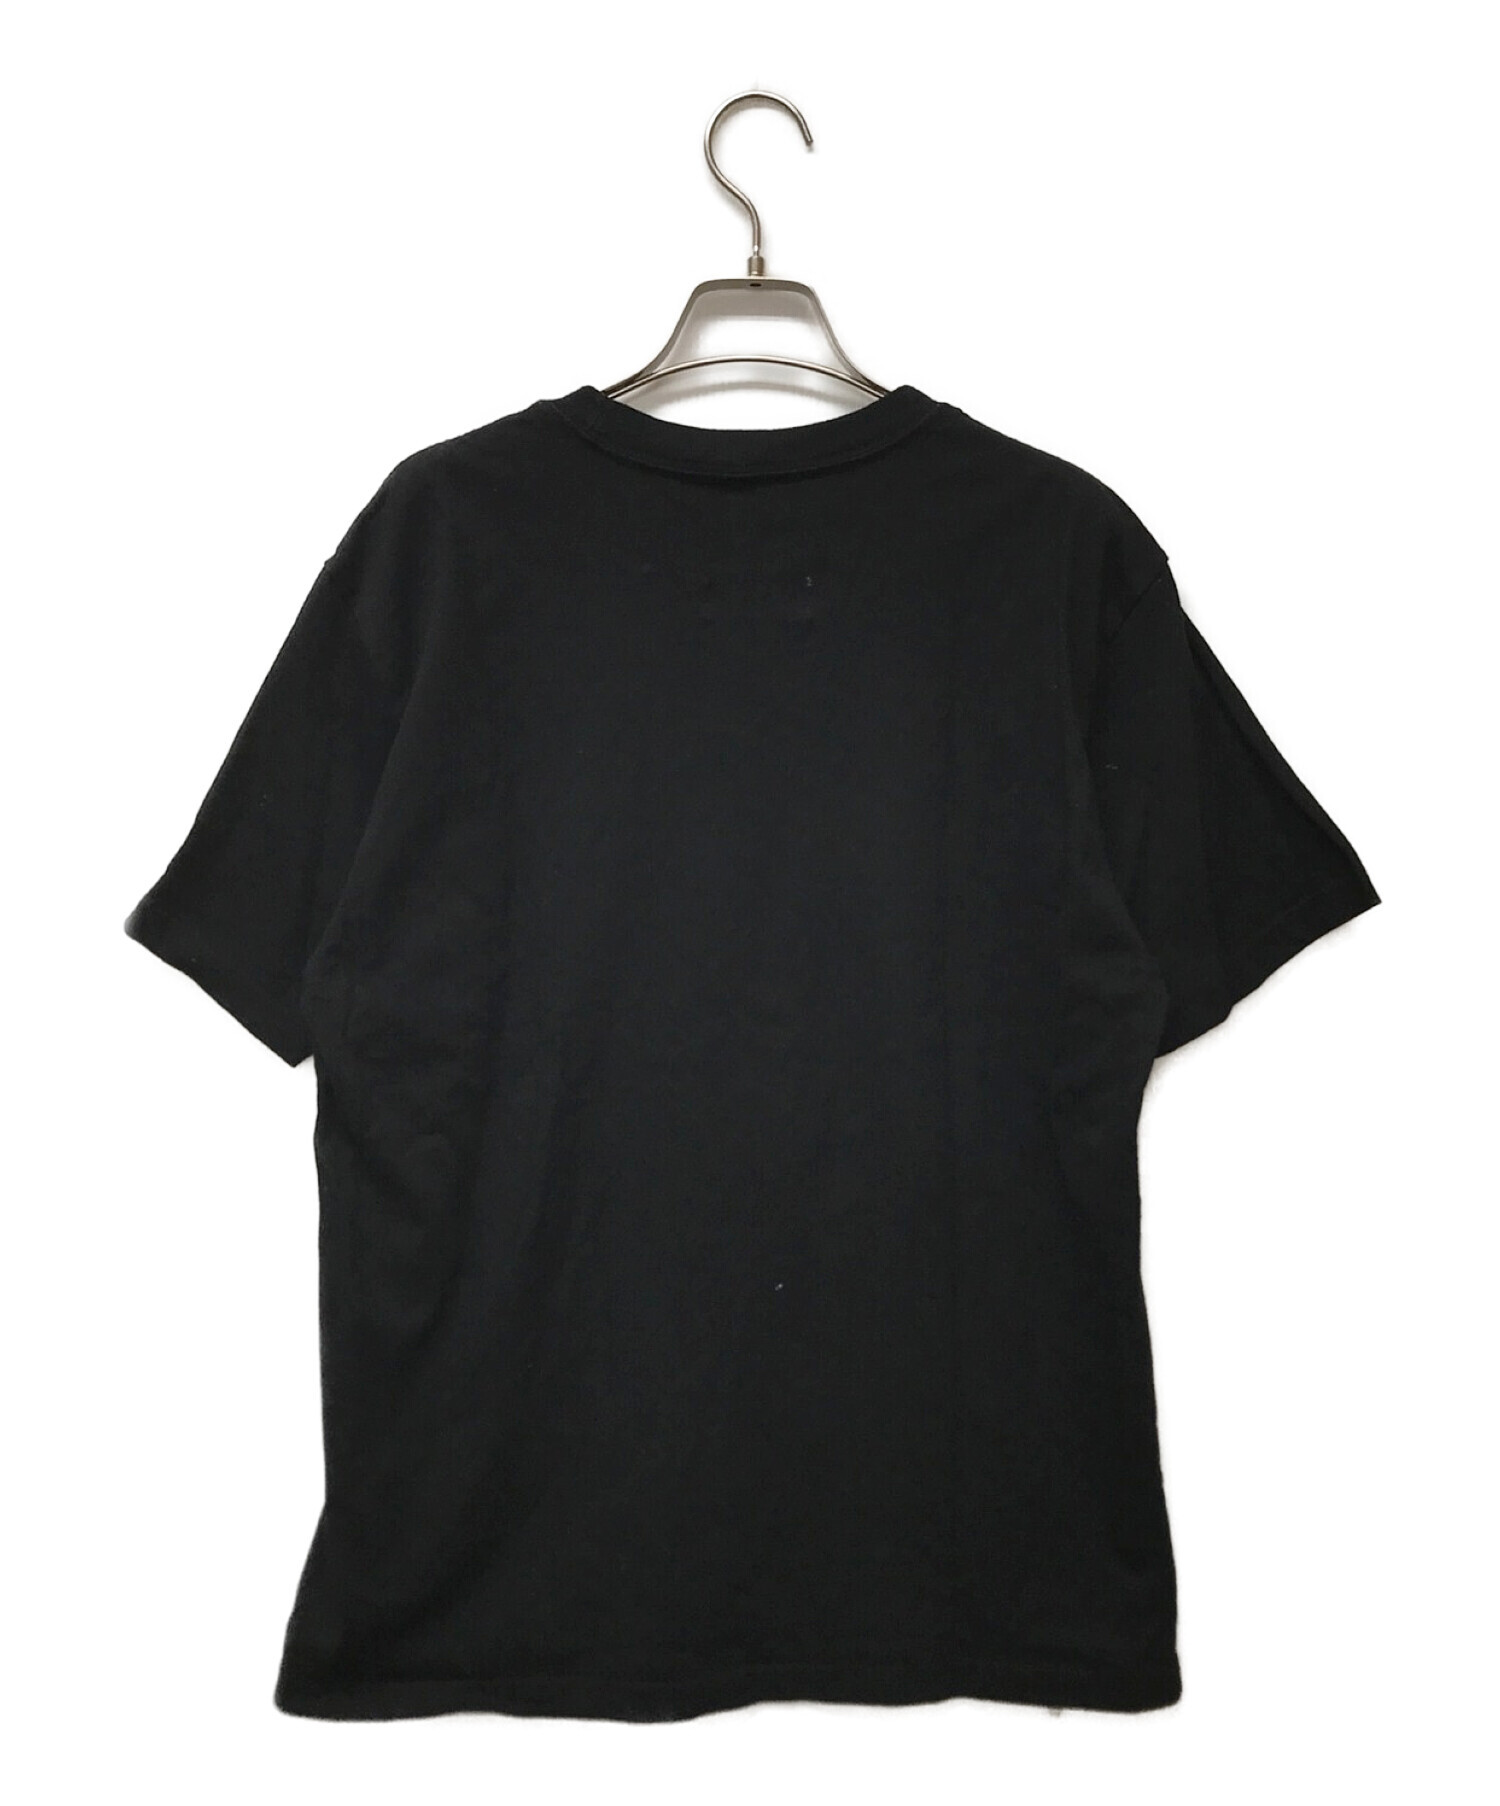 Yohji Yamamoto pour homme (ヨウジヤマモト プールオム) New Era (ニューエラ) コラボシグネチャーロゴTシャツ  ブラック サイズ:L